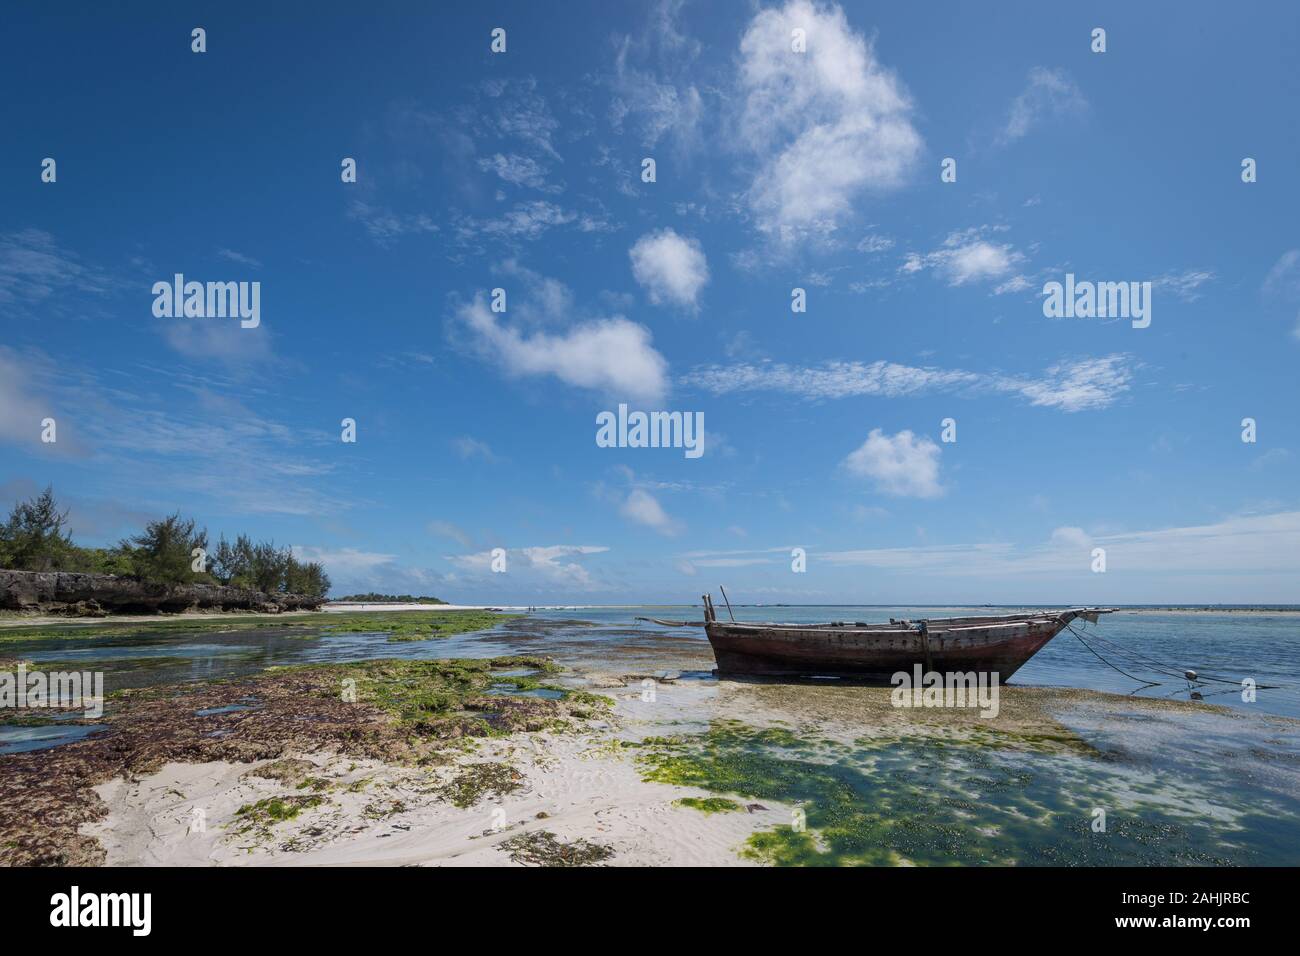 Panorama view of the east coast of Zanzibar Stock Photo